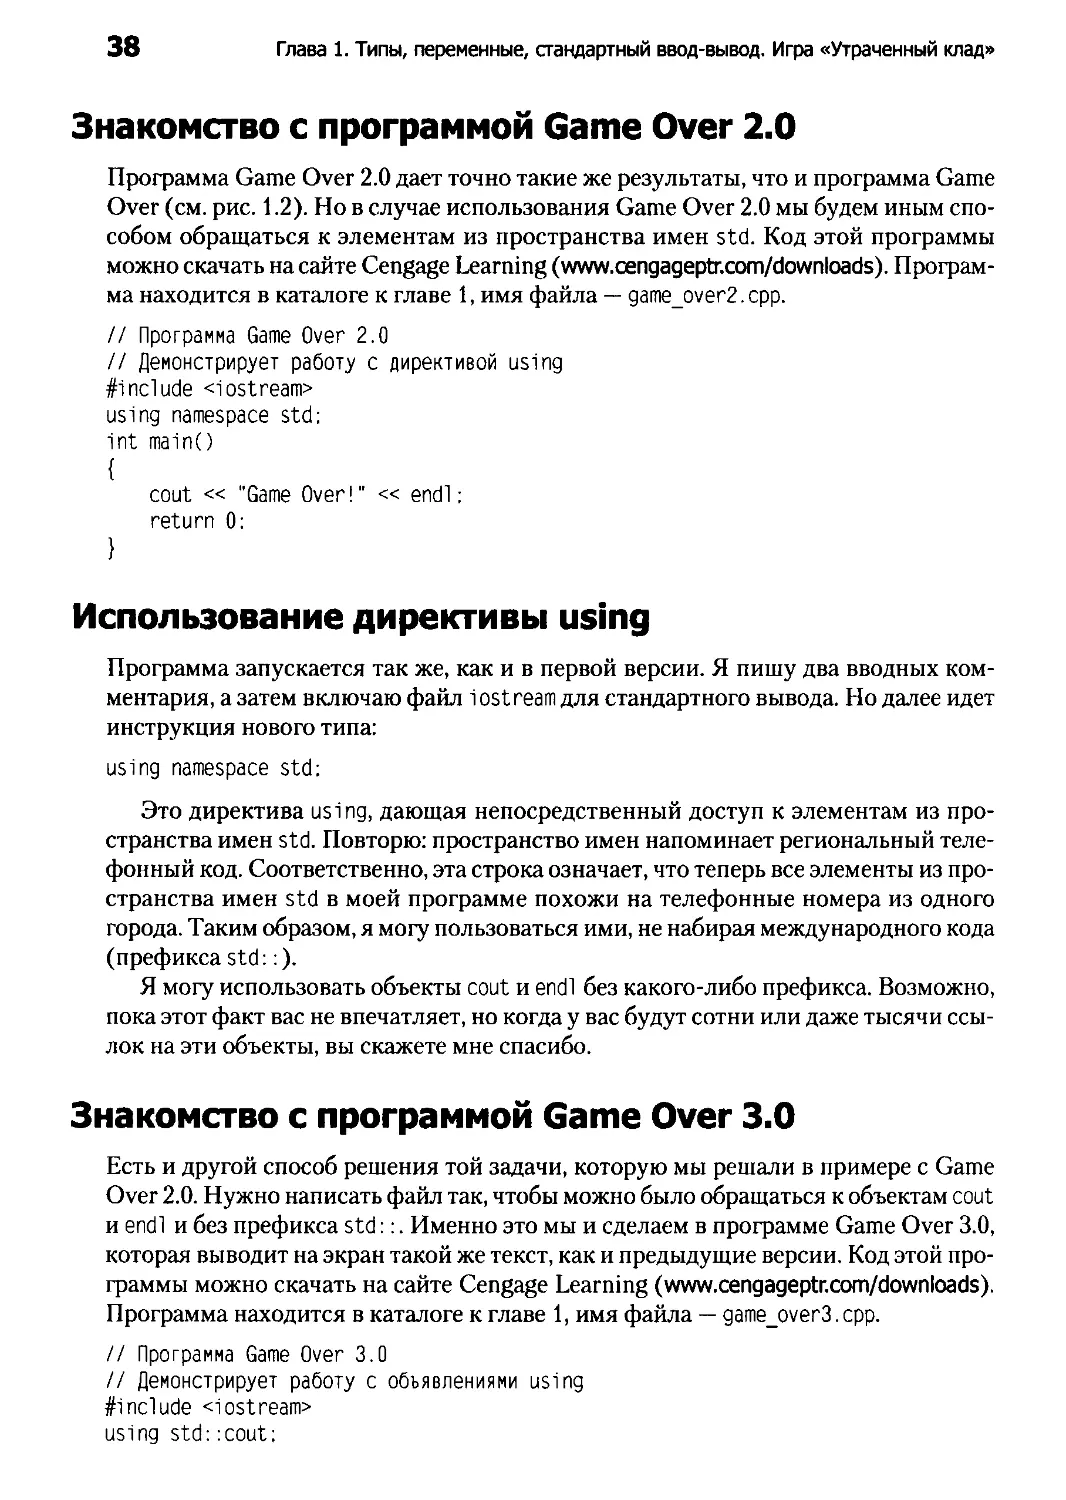 ﻿Использование директивы using
﻿Знакомство с программой Game Over 3.